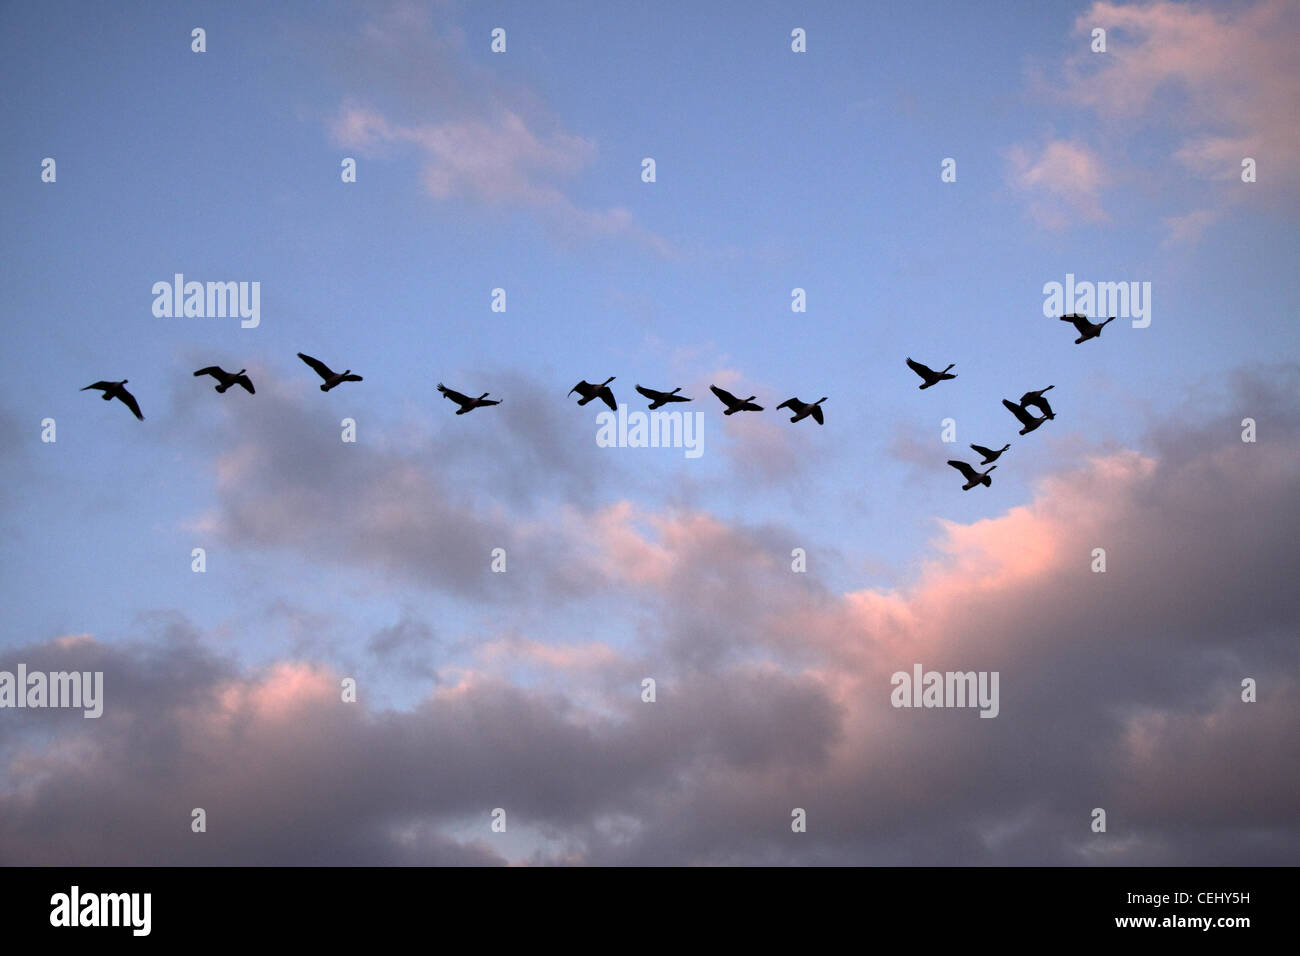 Eine Herde von Kanadagänse fliegen in V-Formation vor einem Sonnenuntergang Himmel. Vögel in v-Formation bei Sonnenuntergang. Stockfoto